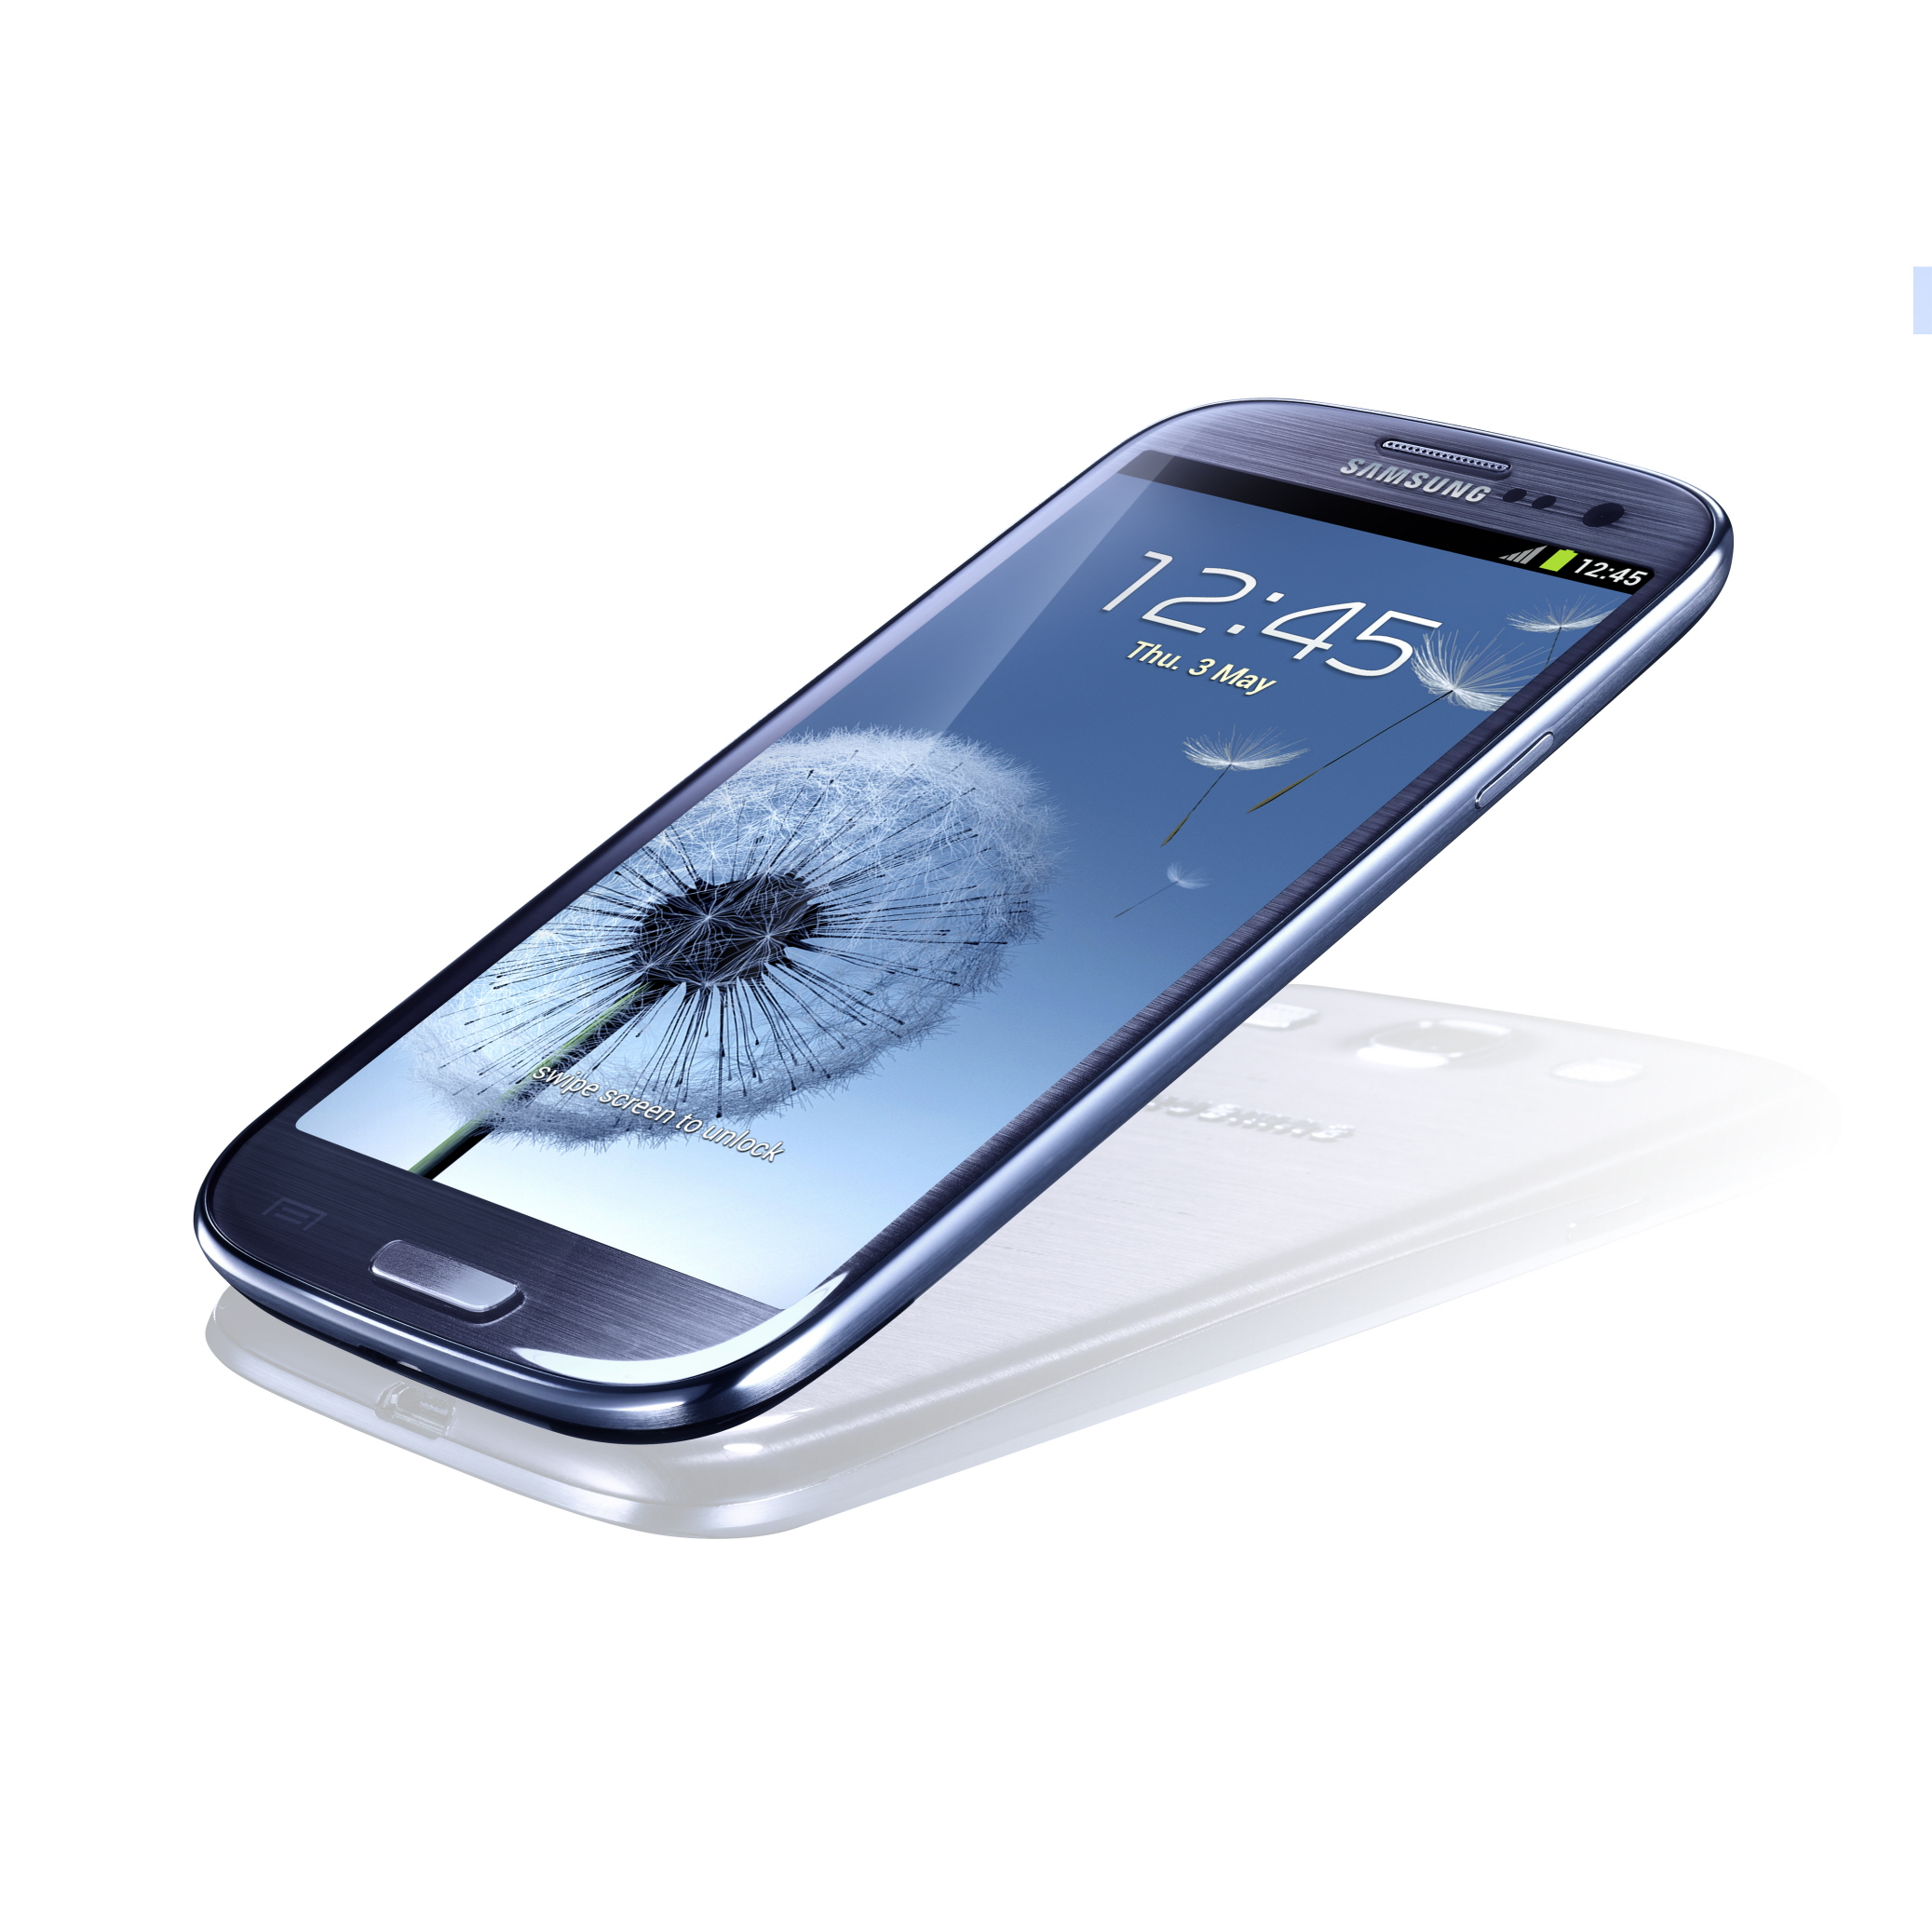 Immagine pubblicata in relazione al seguente contenuto: Samsung Electronics annuncia lo smartphone GALAXY S III | Nome immagine: news17157_4.jpg